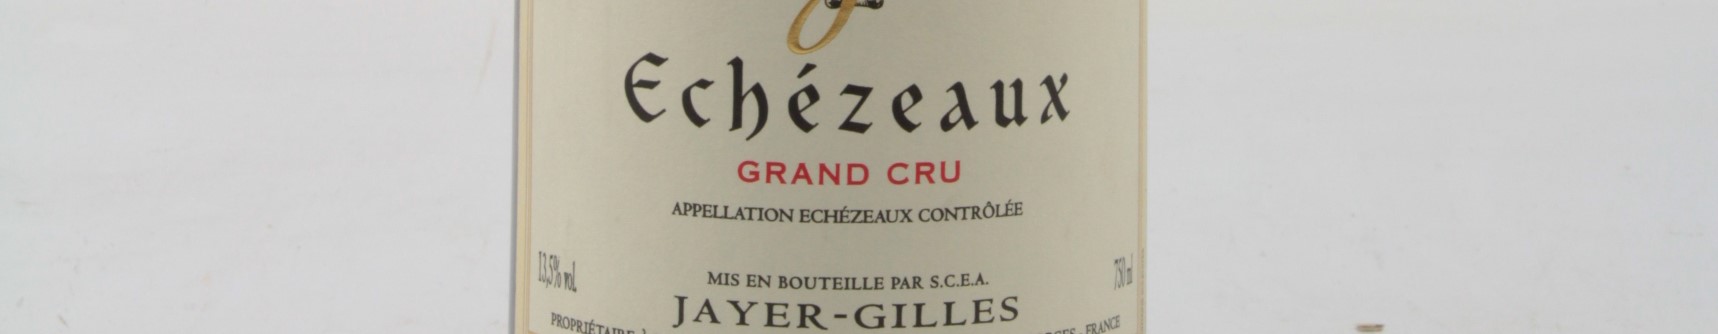 La photo montre une bouteille de vin du grand cru echezeaux du Domaine Gilles Jayer situé en cote d'or en Bourgogne